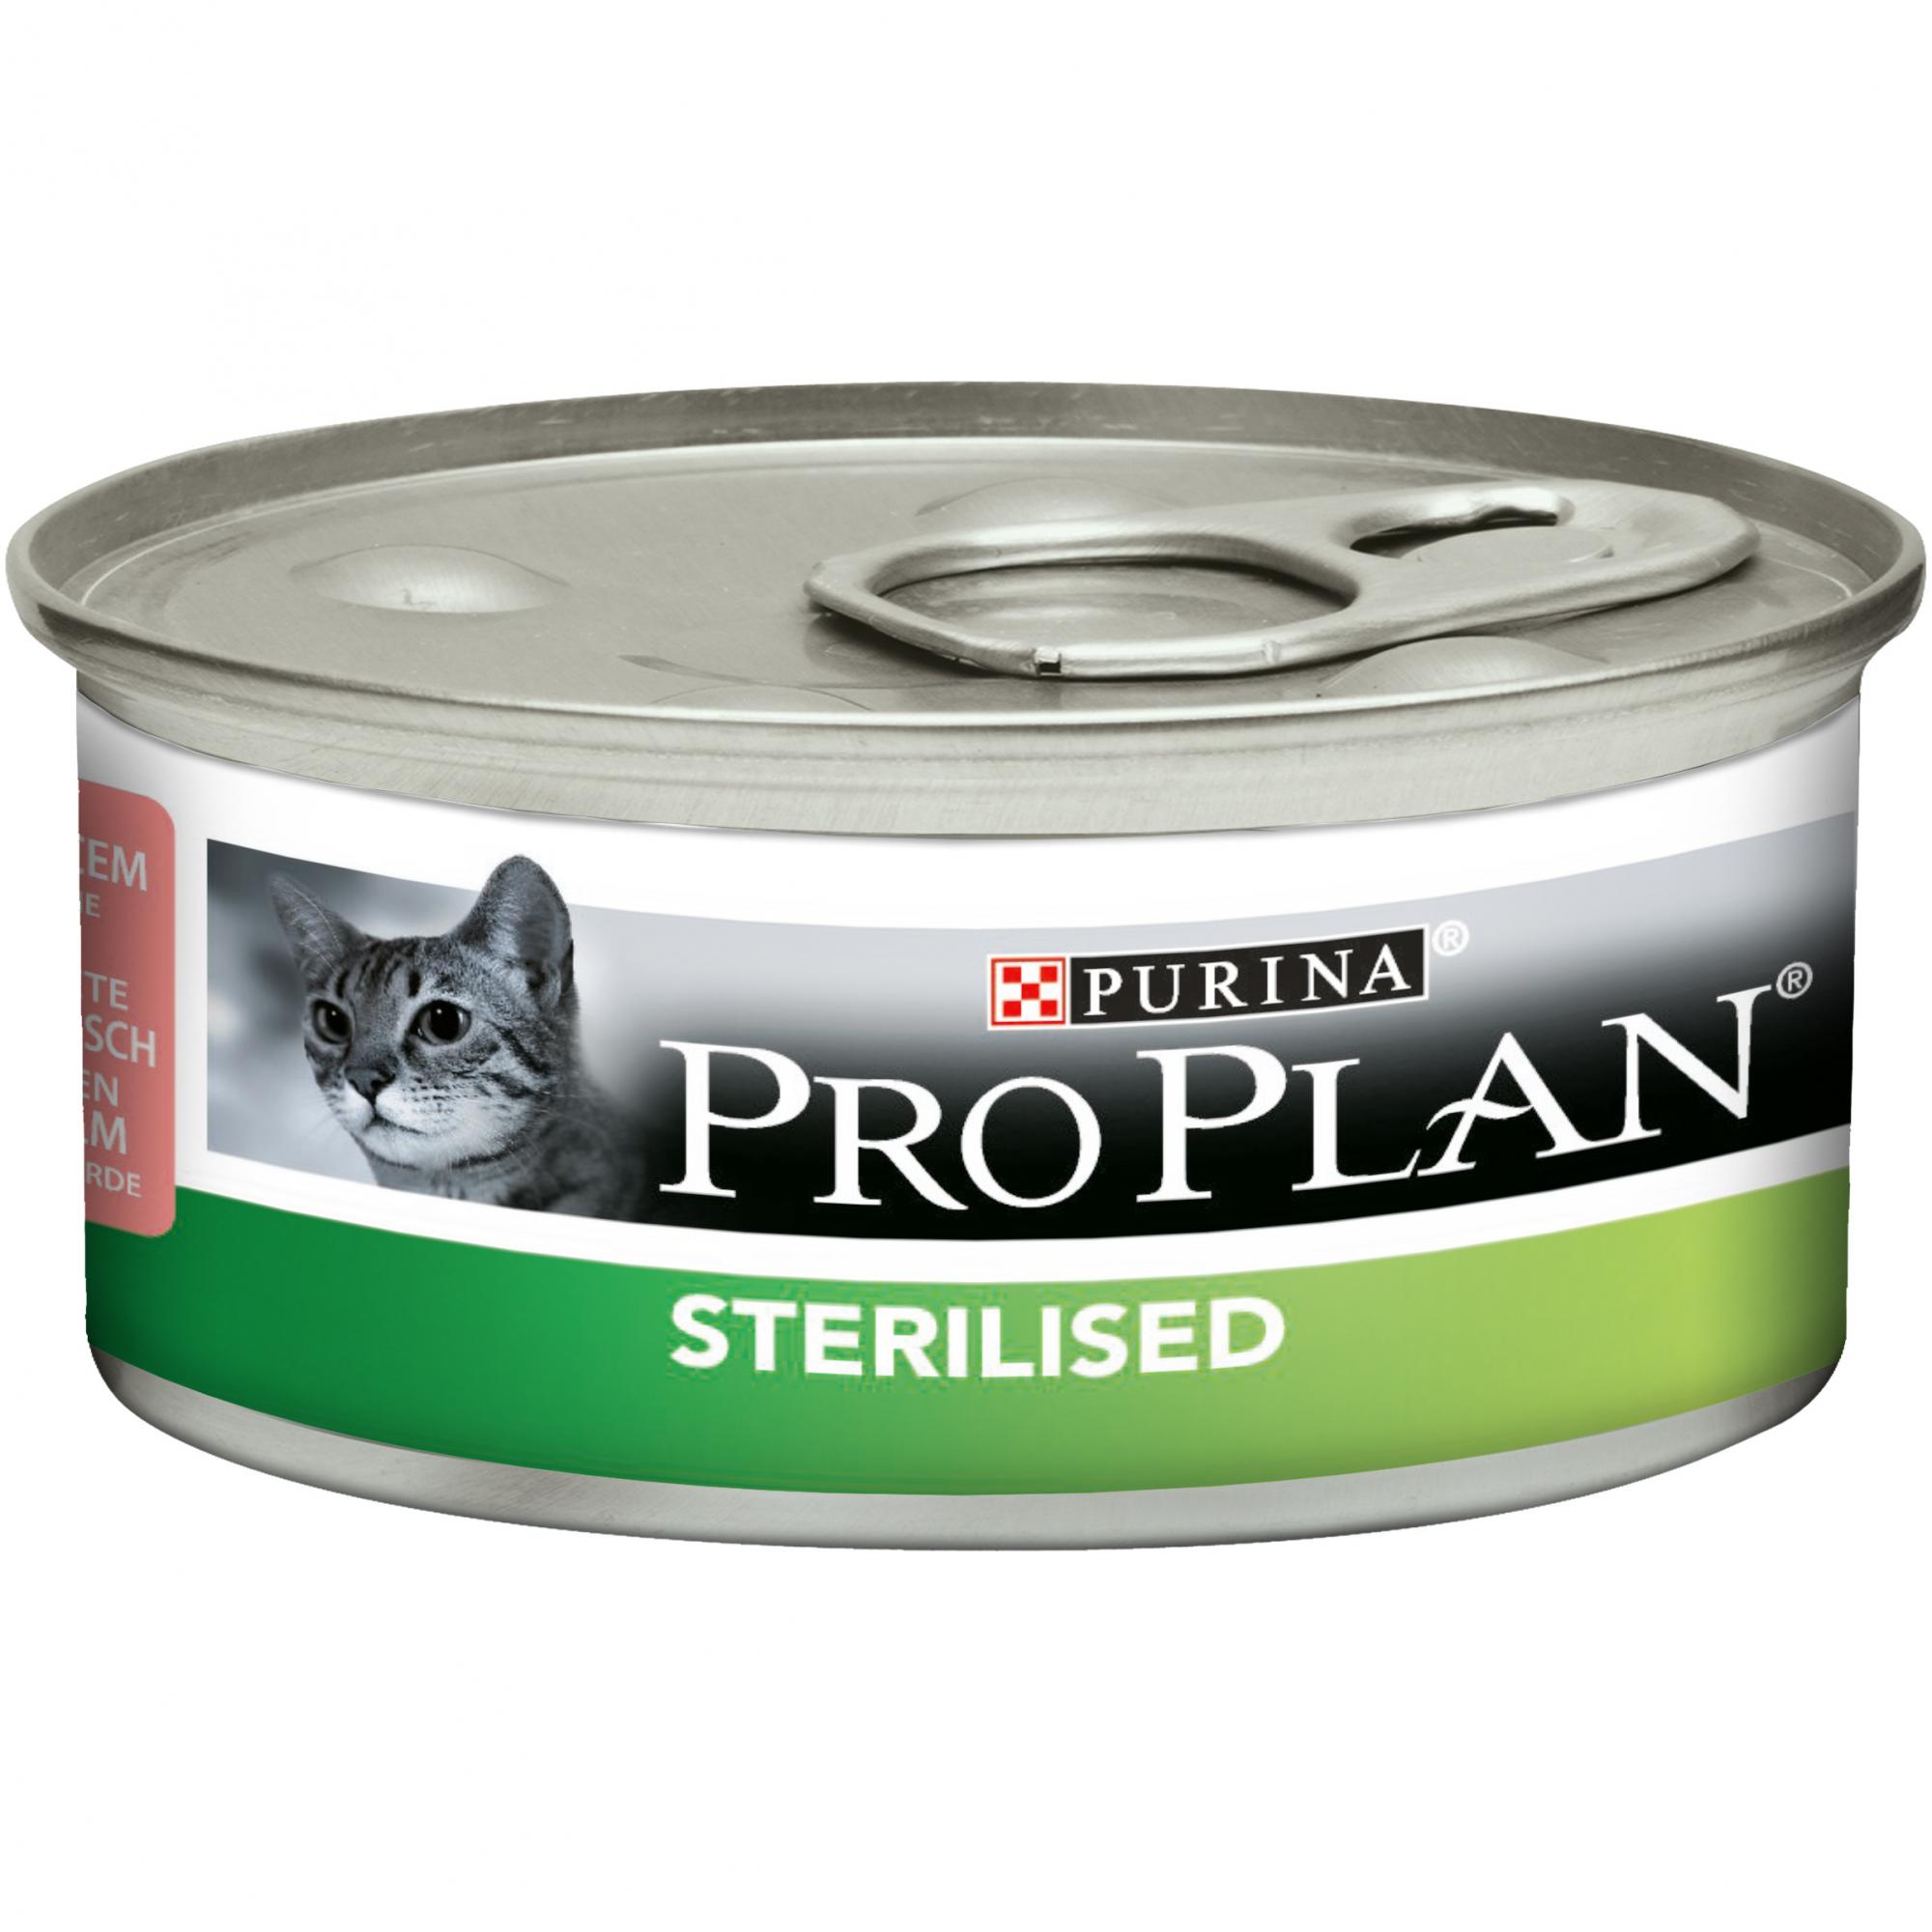 Pro plan для кошек купить спб. Purina Pro Plan Sterilised консервы. Консервы для кошек Pro Plan Sterilised. Паштет Пурина Проплан для стерилизованных кошек. Pro Plan Sterilised для кошек влажный.